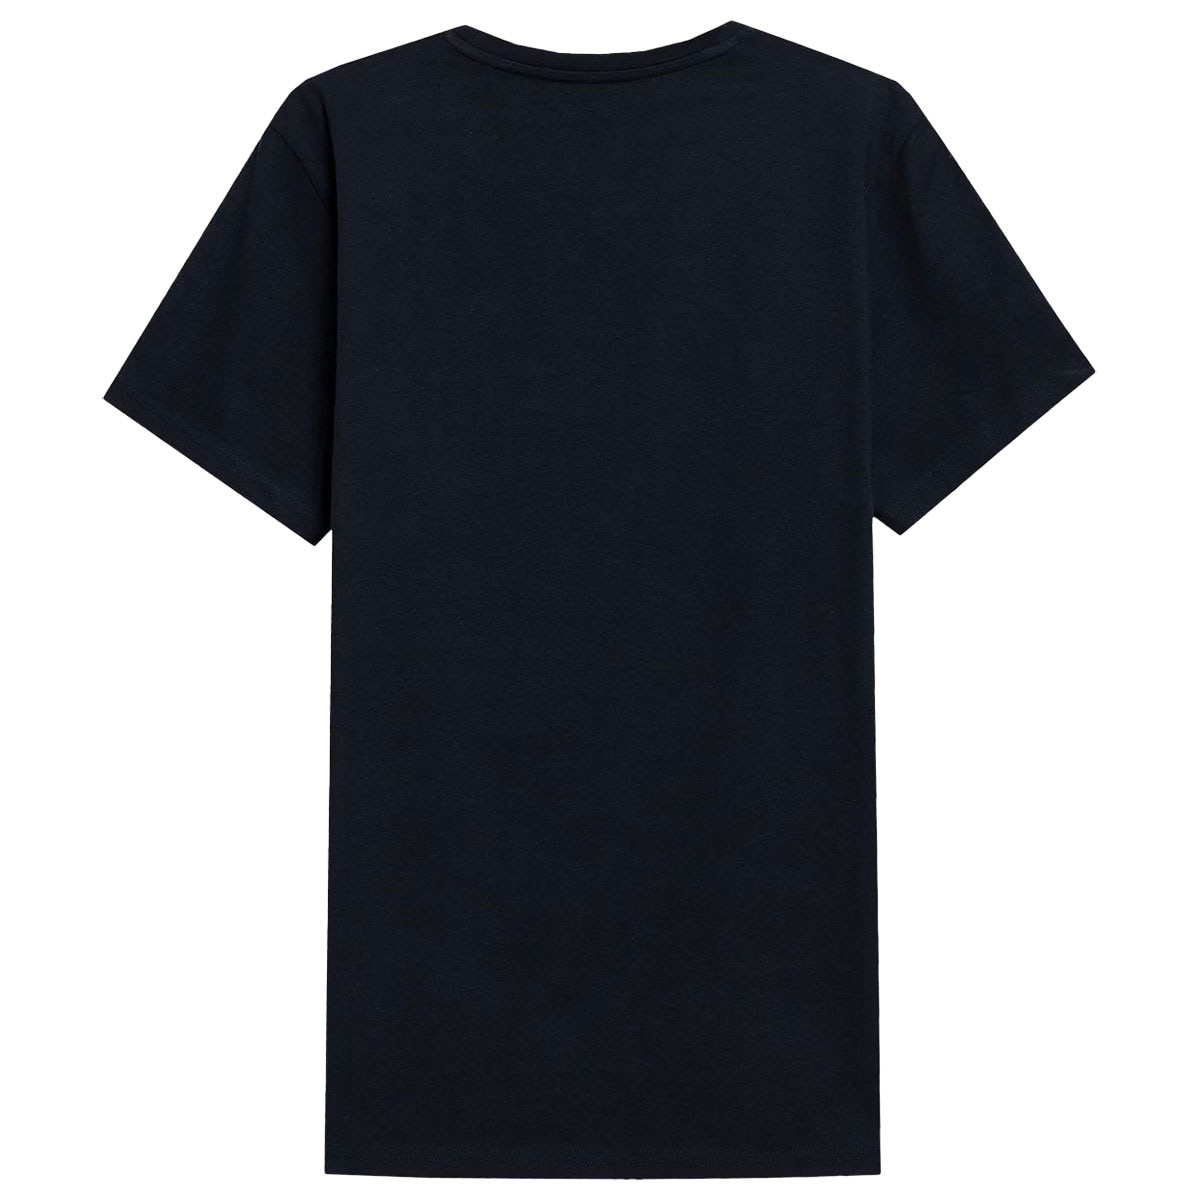 Футболка T-shirt TTSHM0876 Світло-Сірий/Темно-Сірий /Темно-Синій - 3 шт.